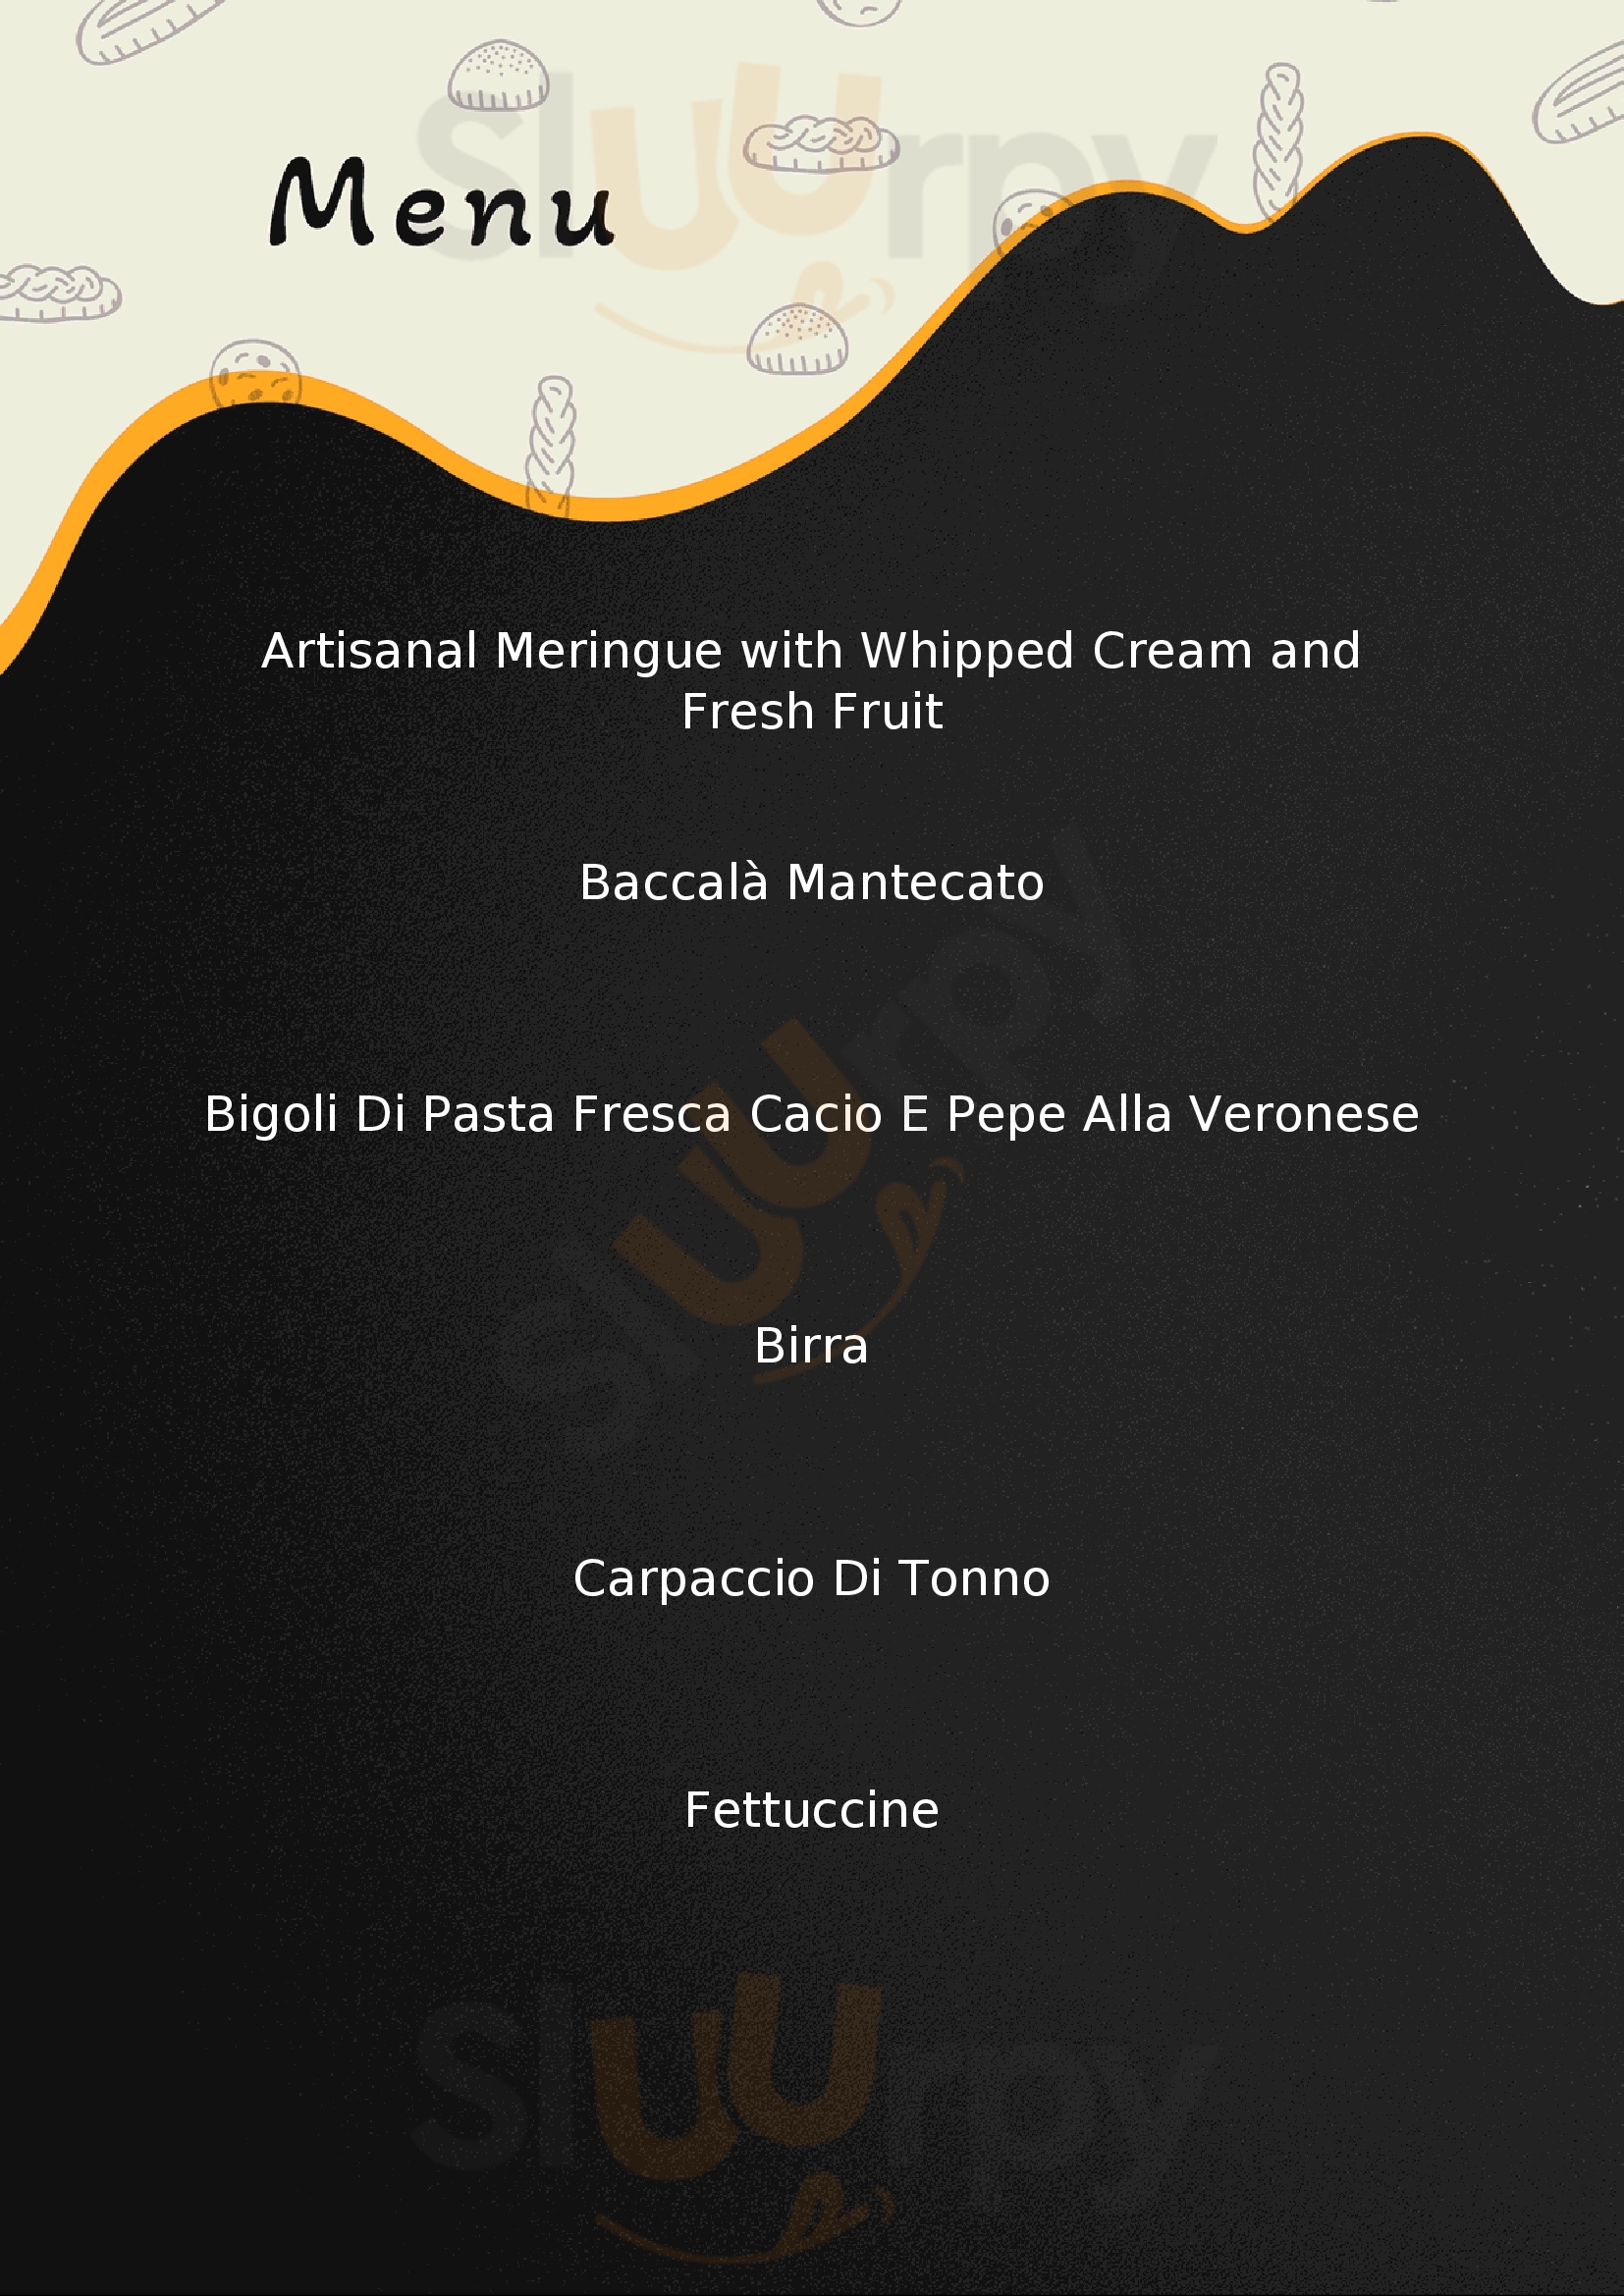 Osteria Caffè Monte Baldo Verona menù 1 pagina